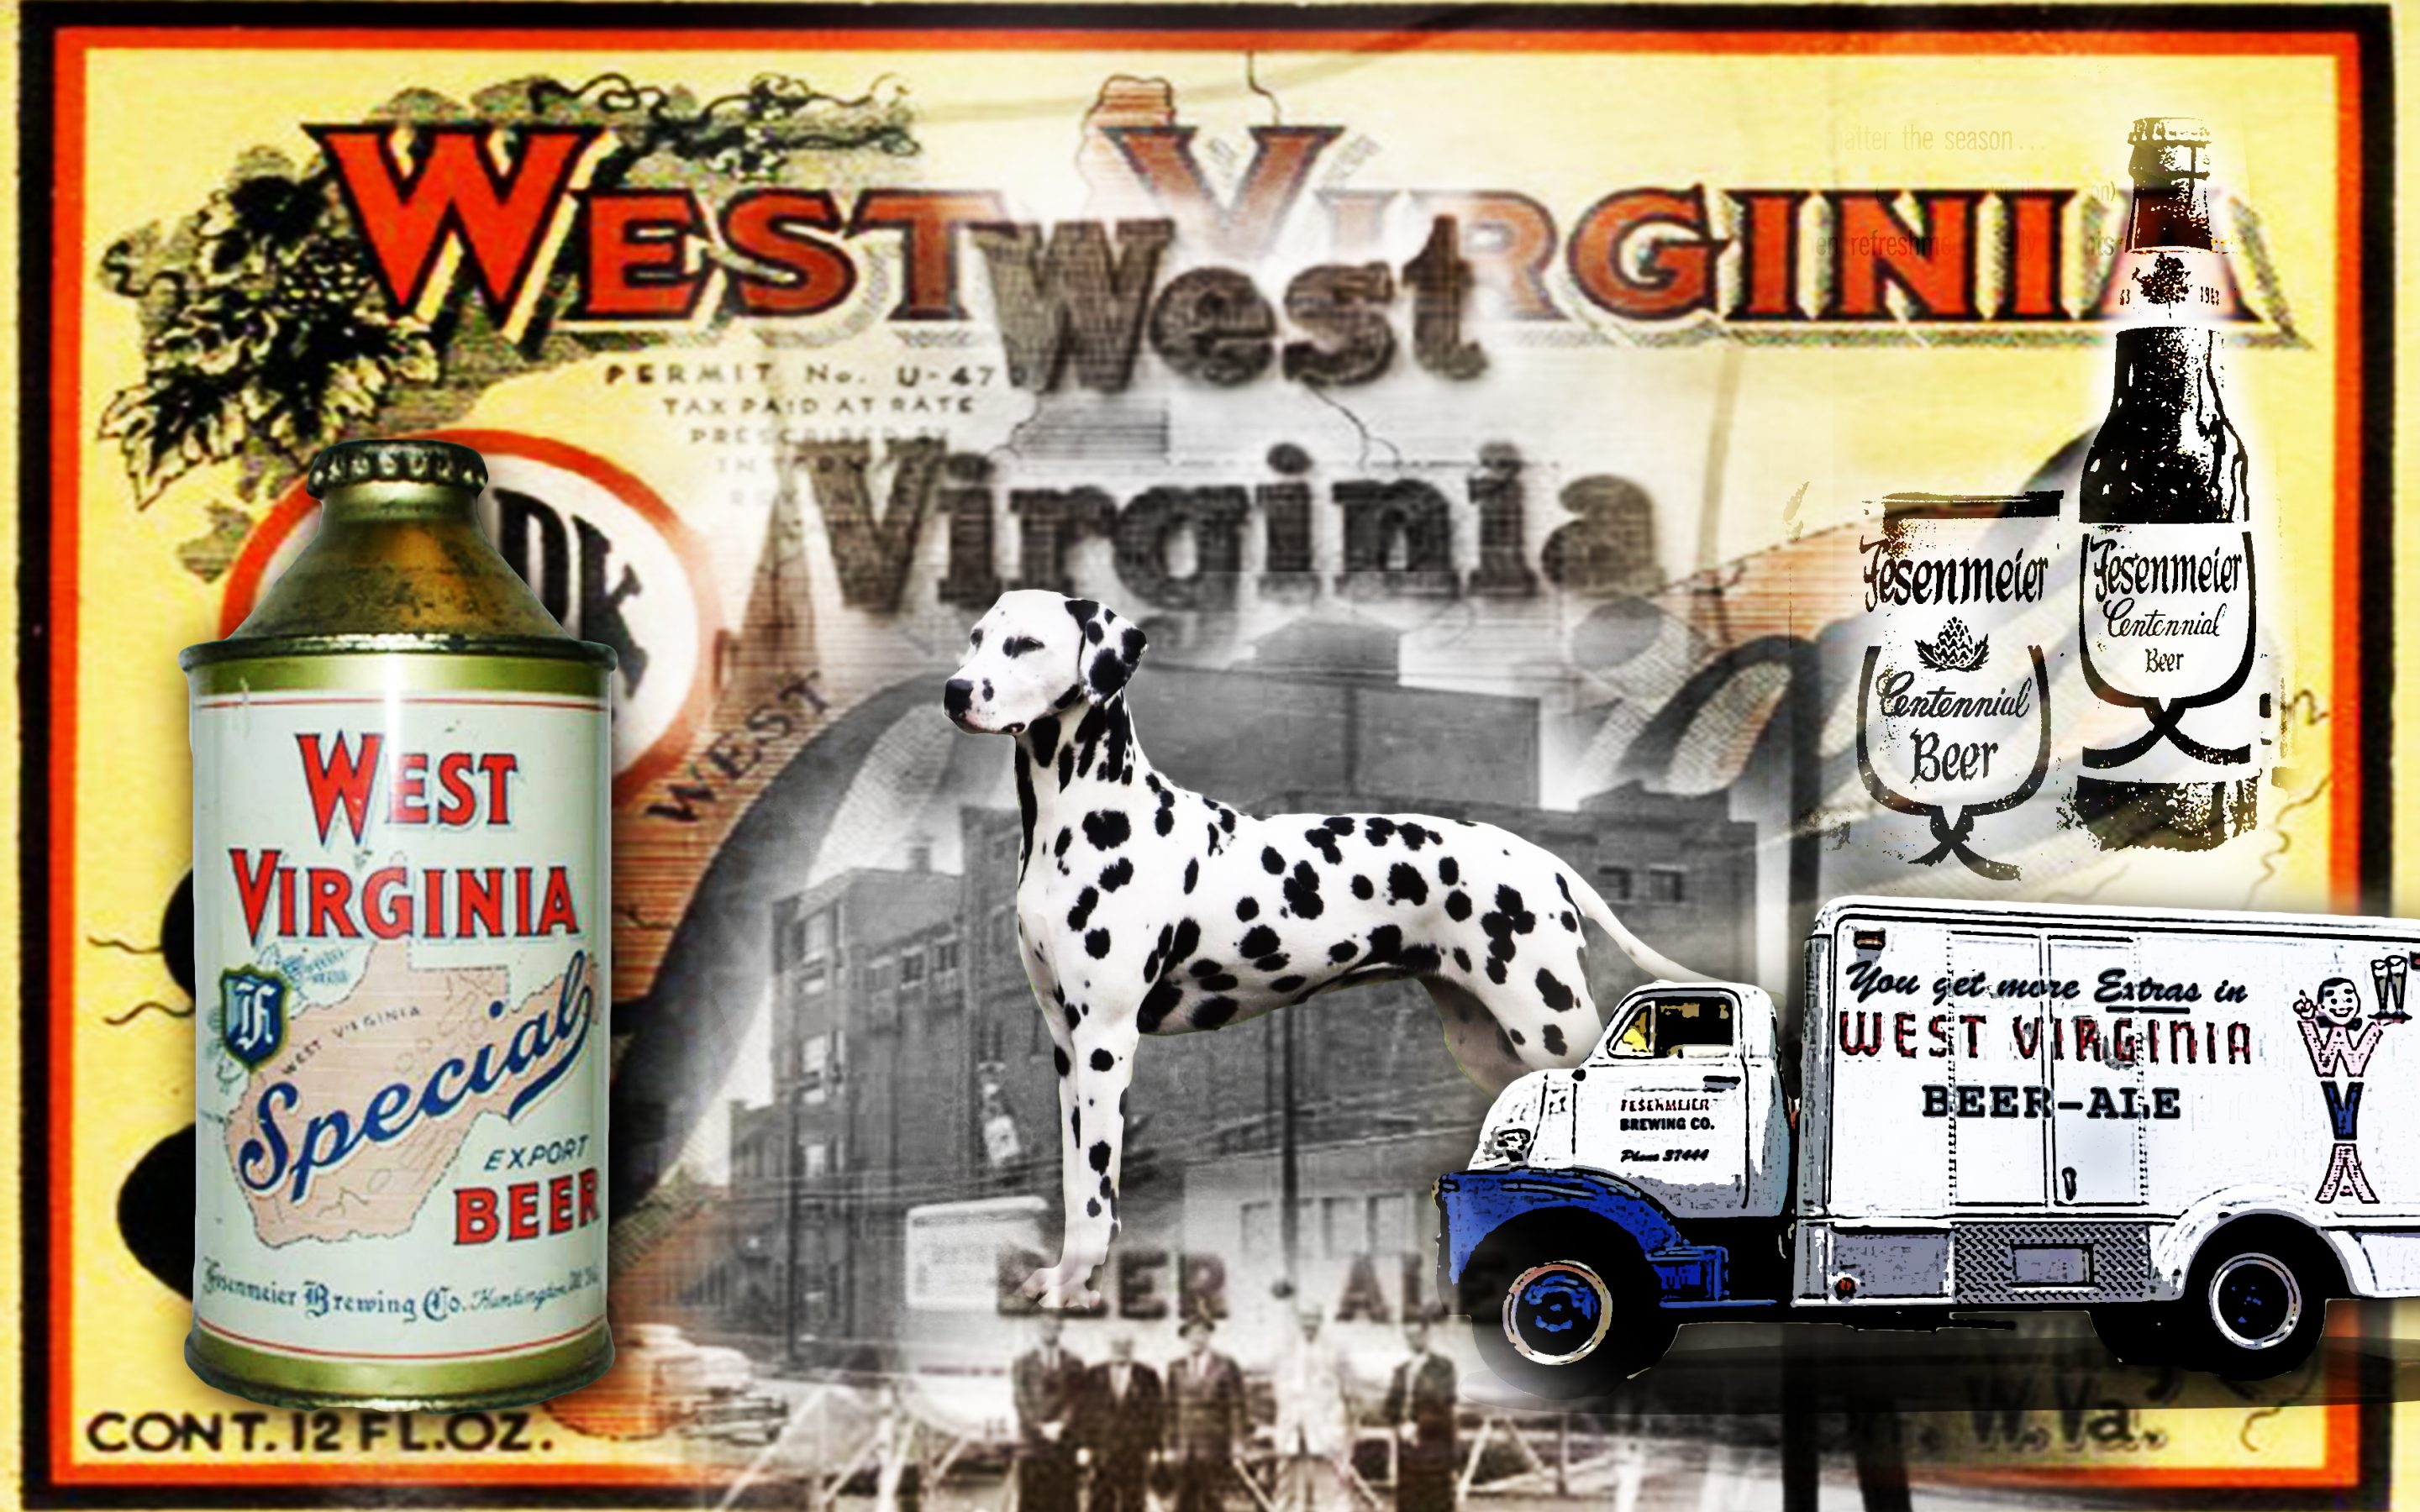 West Virginia Brewing Company 1899-1971